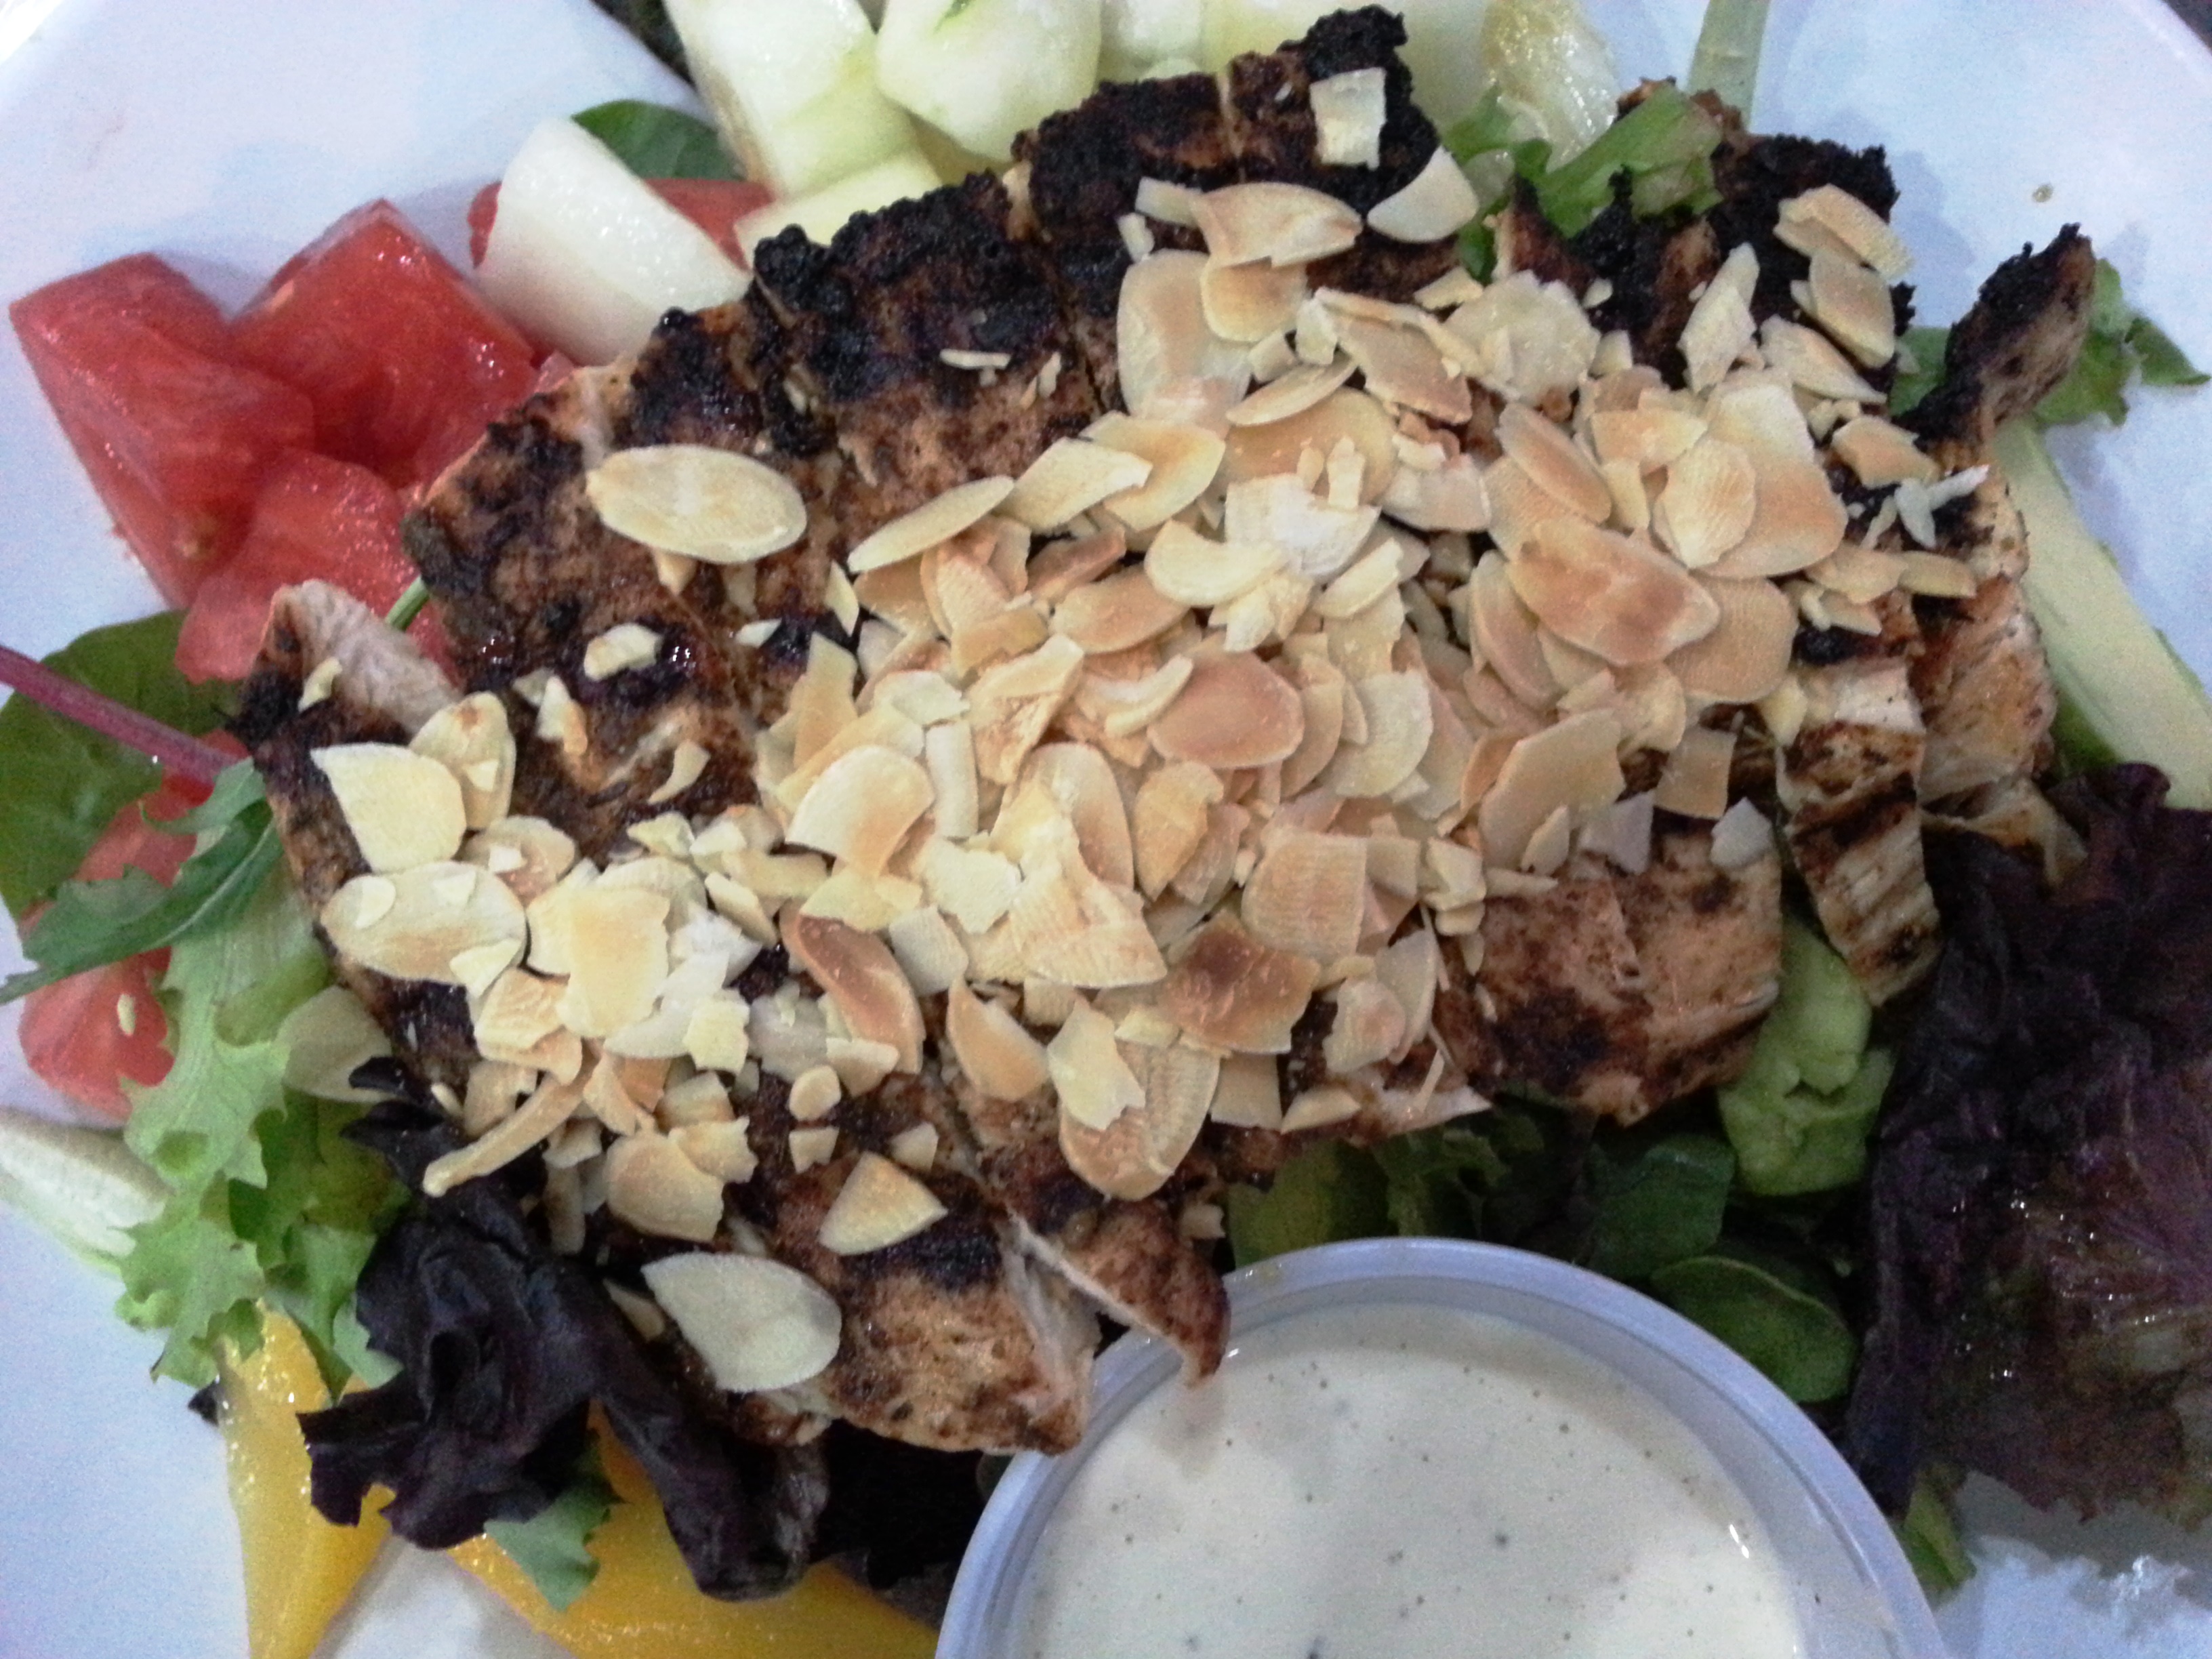 jimmyz kitchen miami beach jerk chicken breast jamaican salad